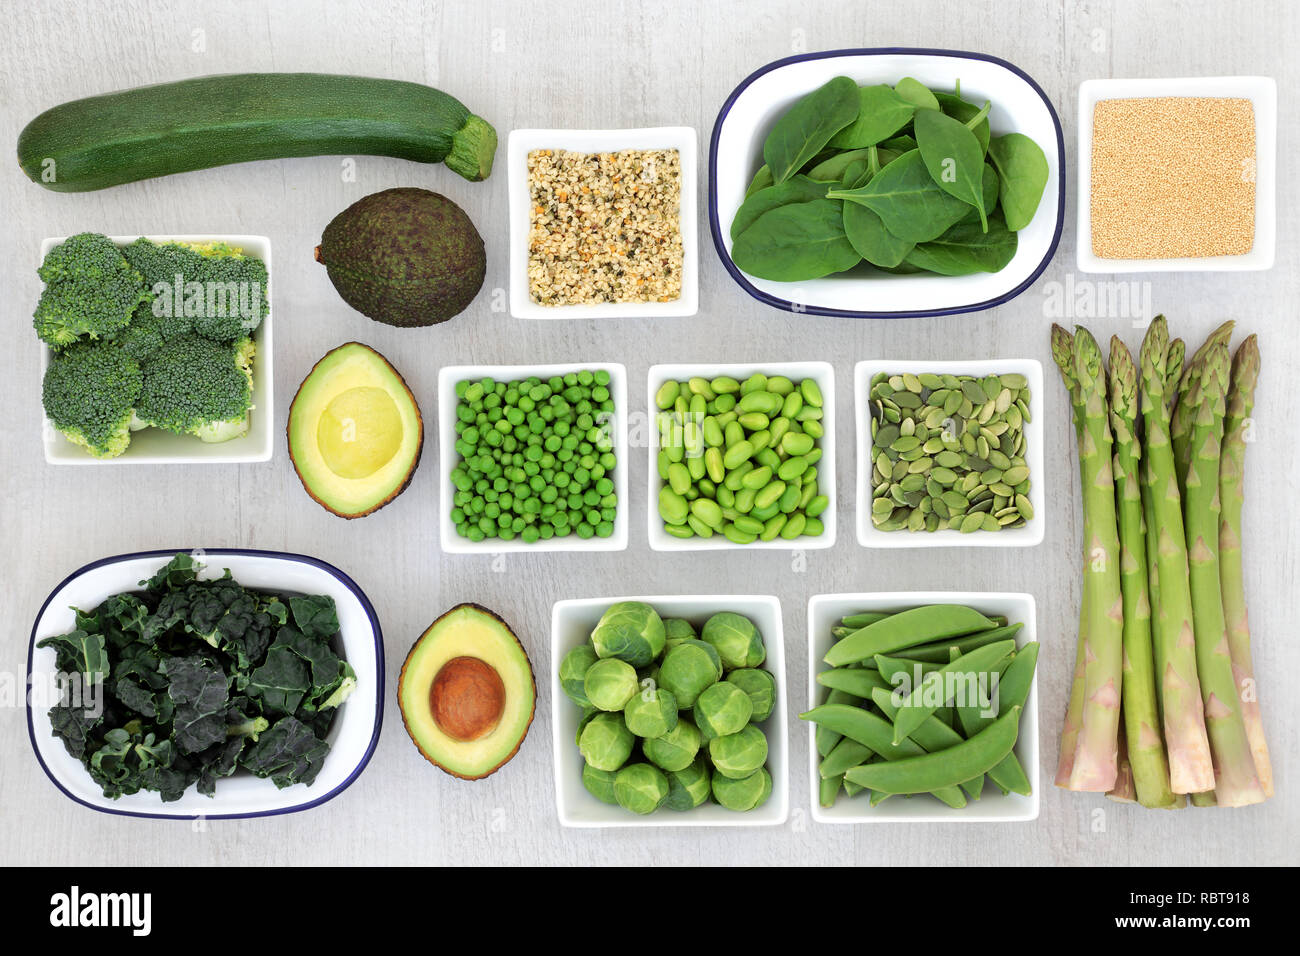 Protein Pflanzenschutz Auswahl an Speisen für eine gesunde Ernährung mit Samen, amaranth Getreide und frische grüne Gemüse auf rustikalem Holz Hintergrund. Stockfoto